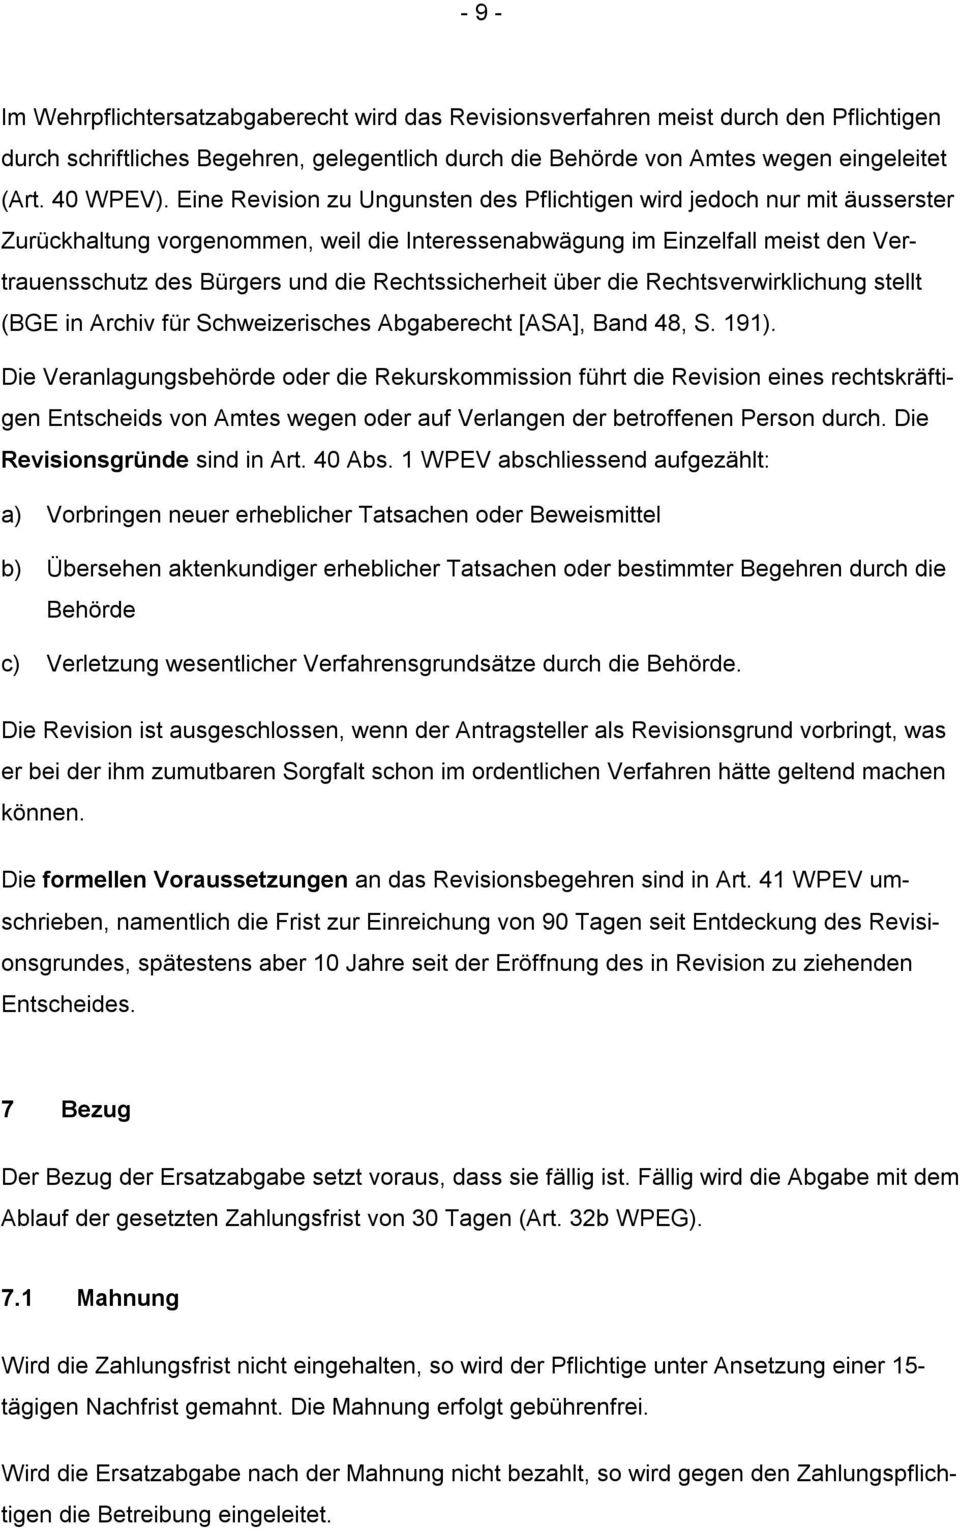 Rechtssicherheit über die Rechtsverwirklichung stellt (BGE in Archiv für Schweizerisches Abgaberecht [ASA], Band 48, S. 191).